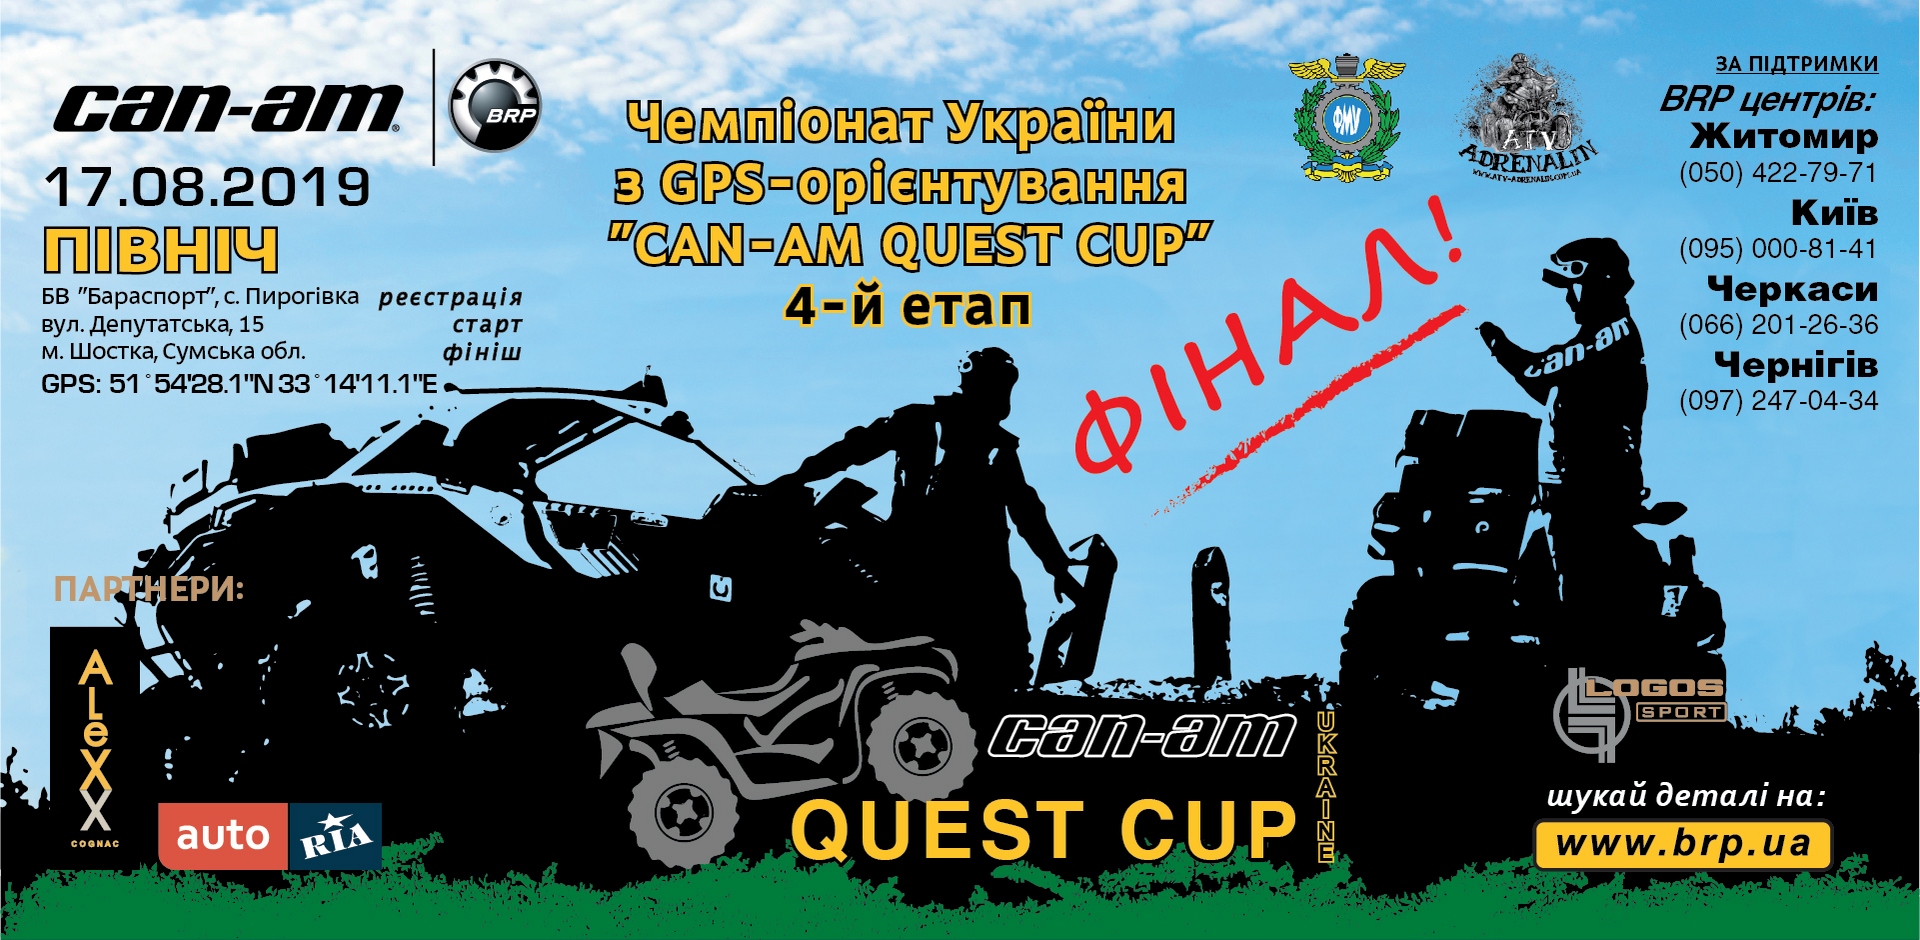 4-й етап Чемпіонату України з GPS-орієнтування “CAN-AM QUEST CUP 2019”. Фінал!